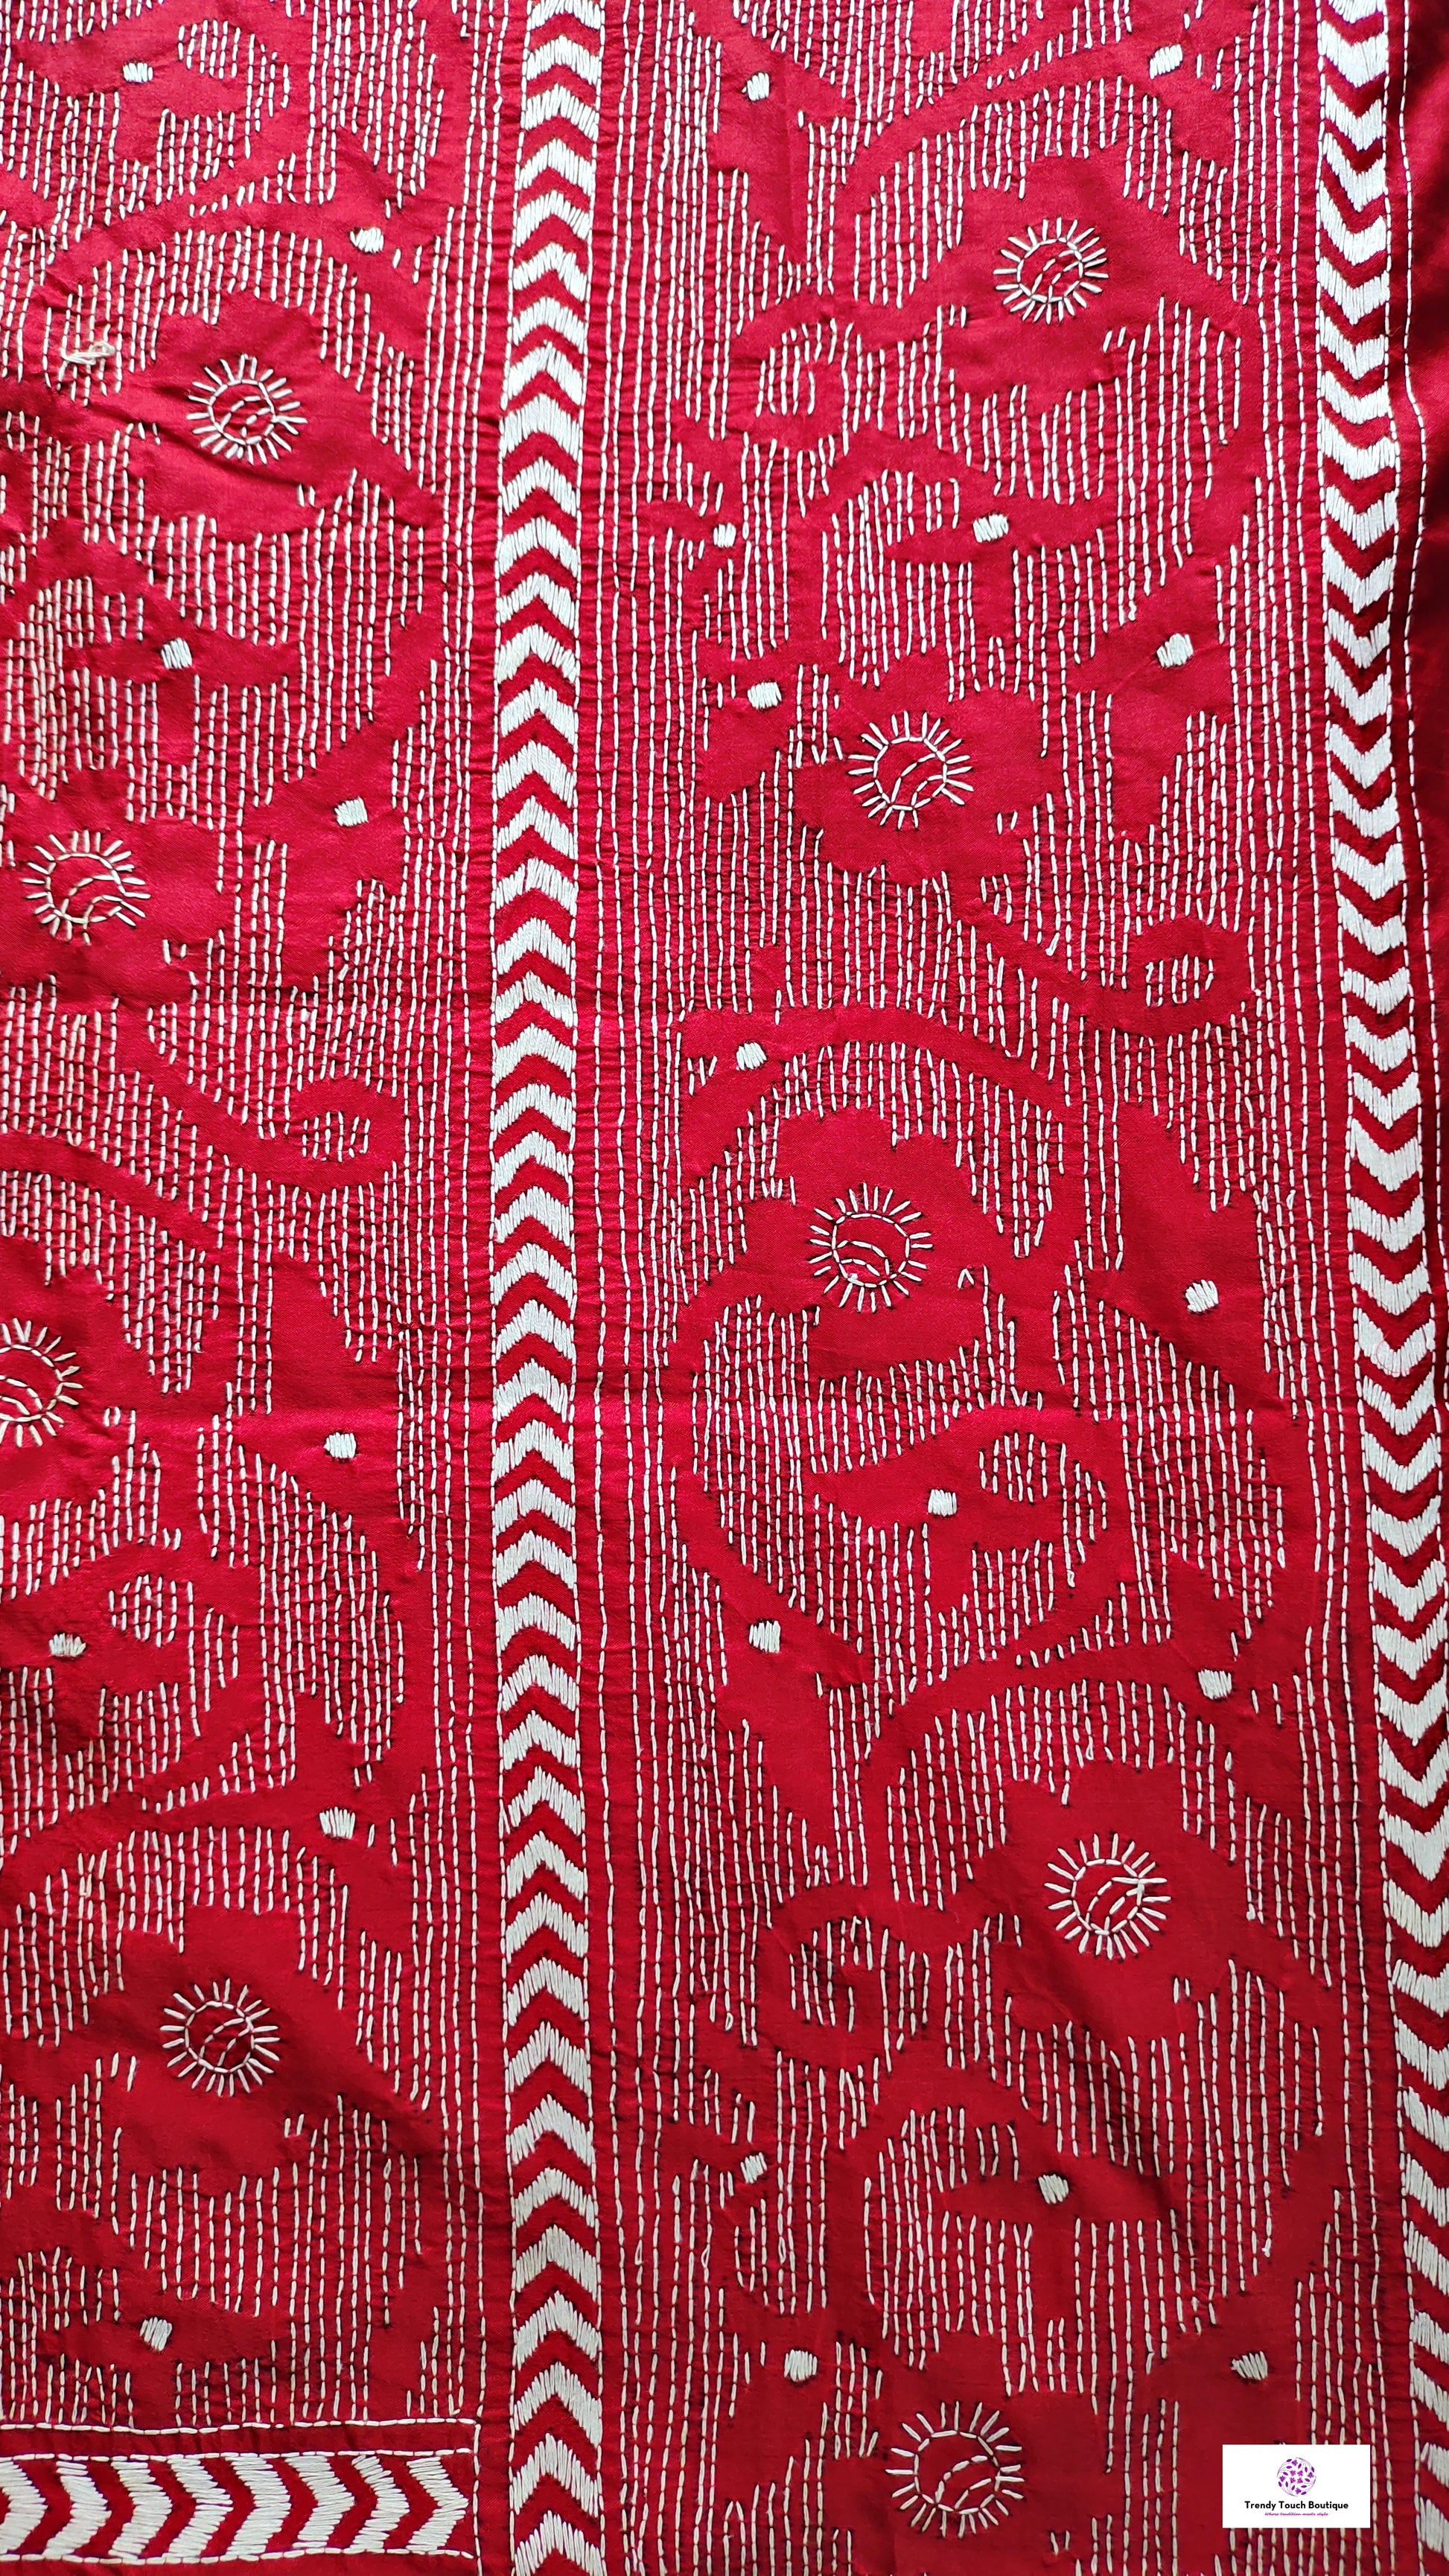 Red kantha stitch saree online reverse kantha work art silk bangalore silk saree best price office wear saree wedding saree gift